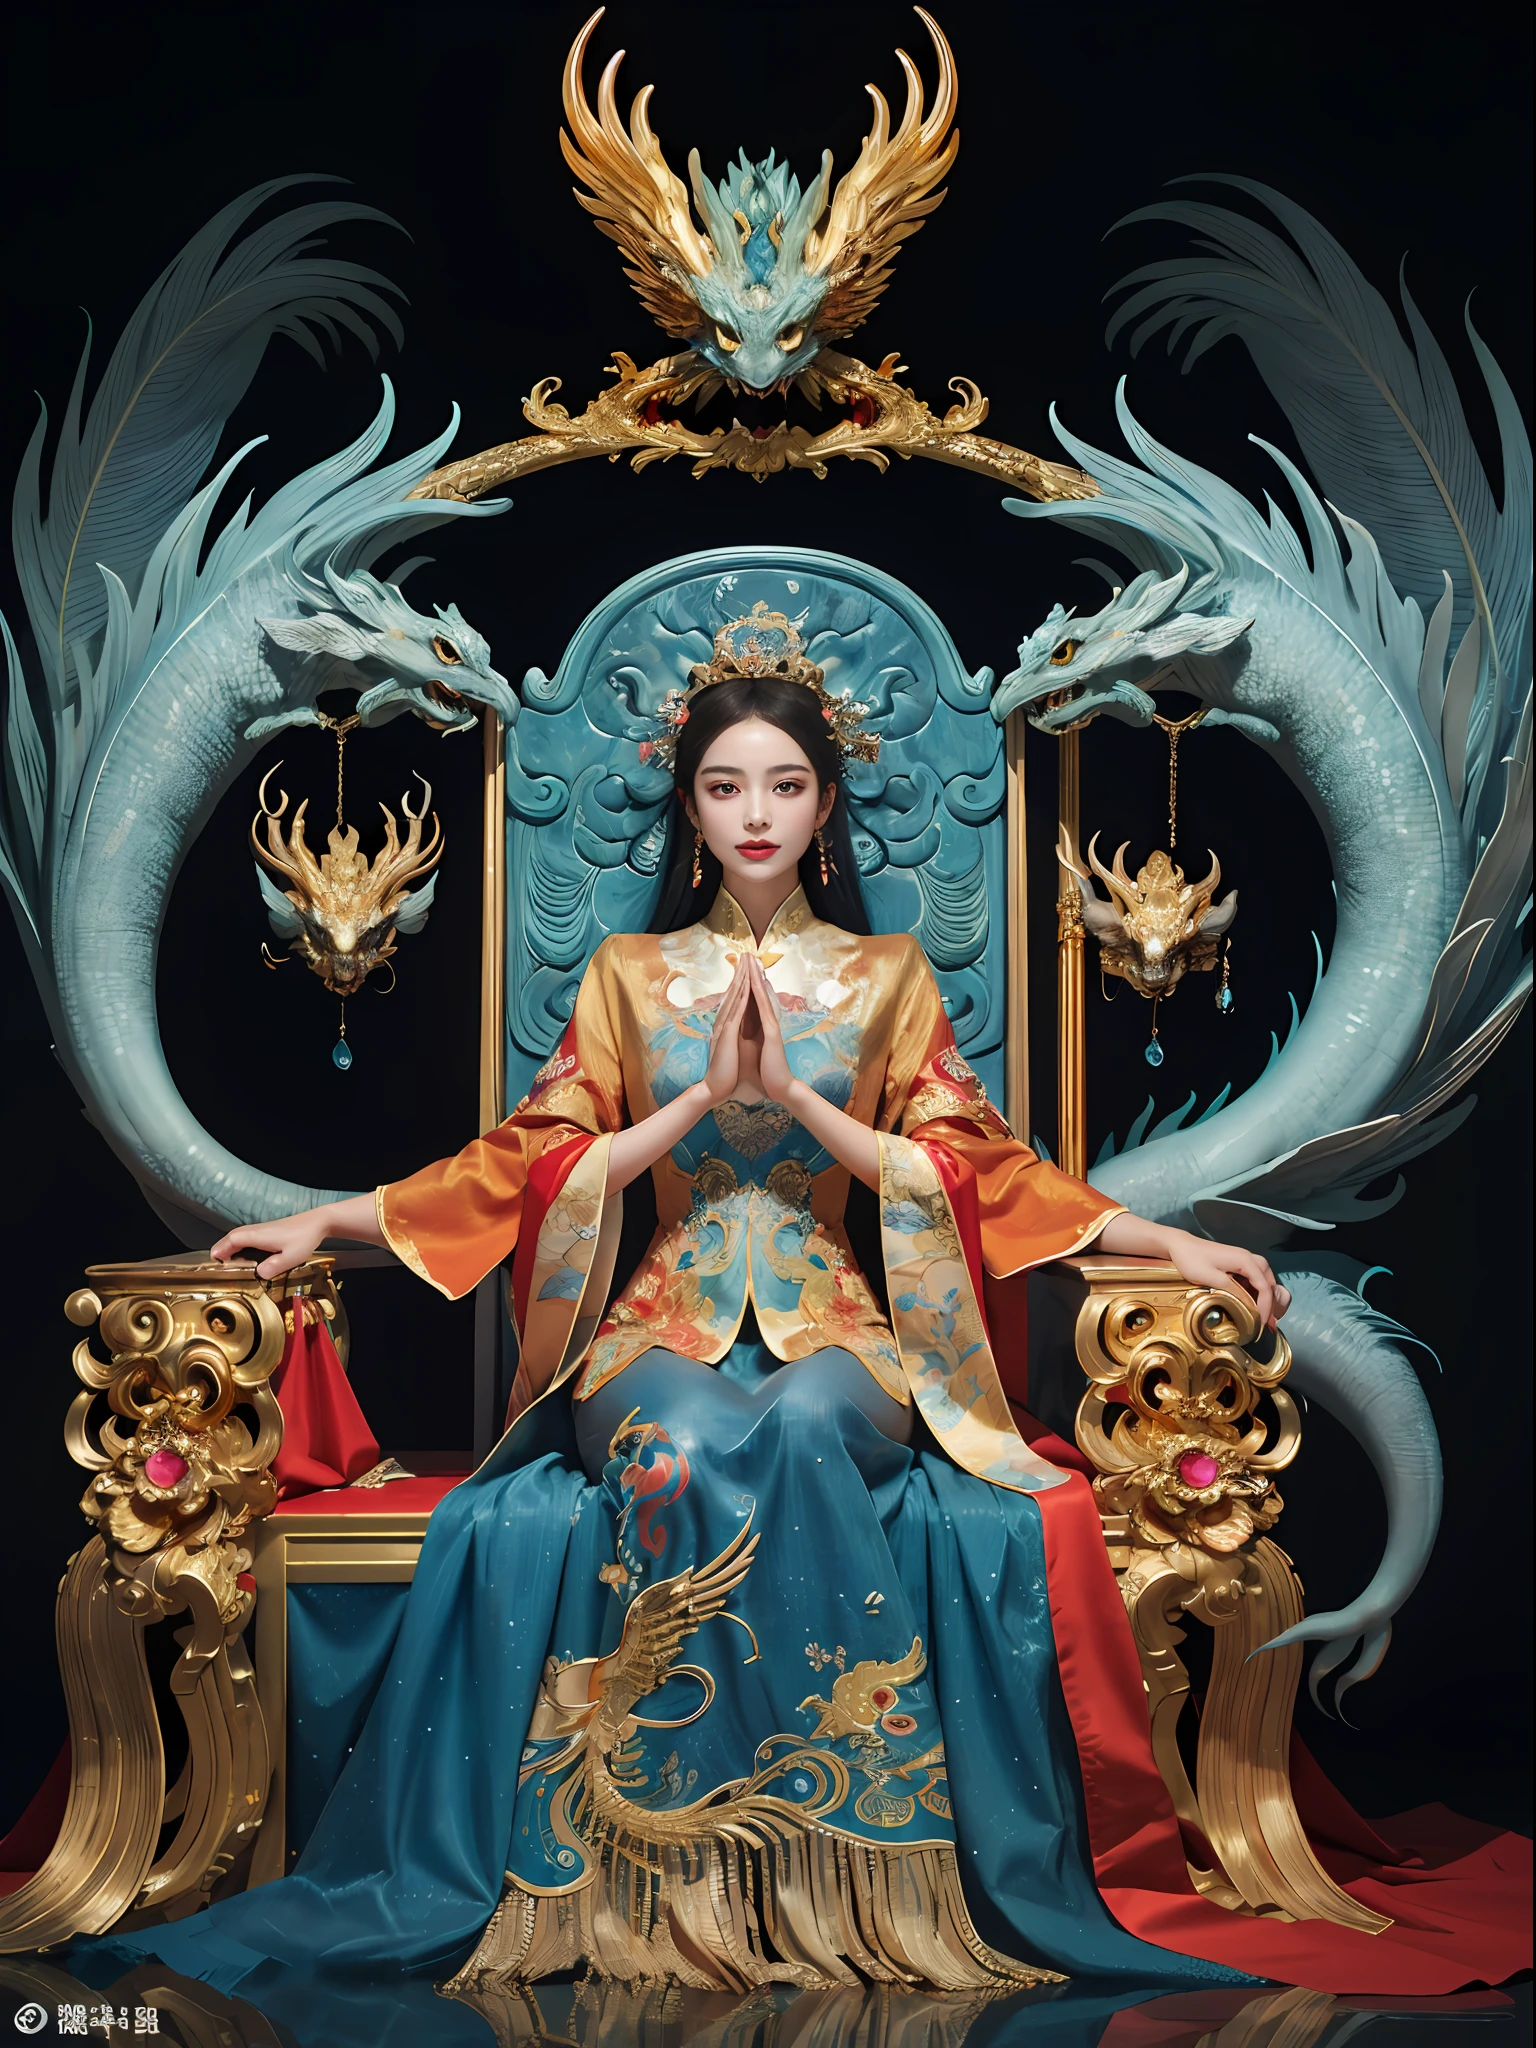 坐在宝座上的中国女孩, a throne encrusted with 珍贵的石头, 周围环绕着中国凤凰兽, 金子 and ruby color, 独特的怪物插图, dau 到集合, 高分辨率, 一幅画, 密集的组成, 有趣的重复, 珍贵的石头, 水晶, 金子, 细致的绘画, 独特的怪物插图s, 超精细的细节, 实际的, super 高分辨率, 复杂的, 超级细节, (皮肤凹痕), 可爱的, 女性化, 详细主体, (细致的脸部: 1.1), (轮廓虹膜), (水彩镜片), (完美的眼睛), 4k, 华丽的, (杰作: 1.2), (最好的质量: 1.2), 华丽的 long dress, 动态姿势, 丰富的色彩, 电影光影，red and 金子en clothes